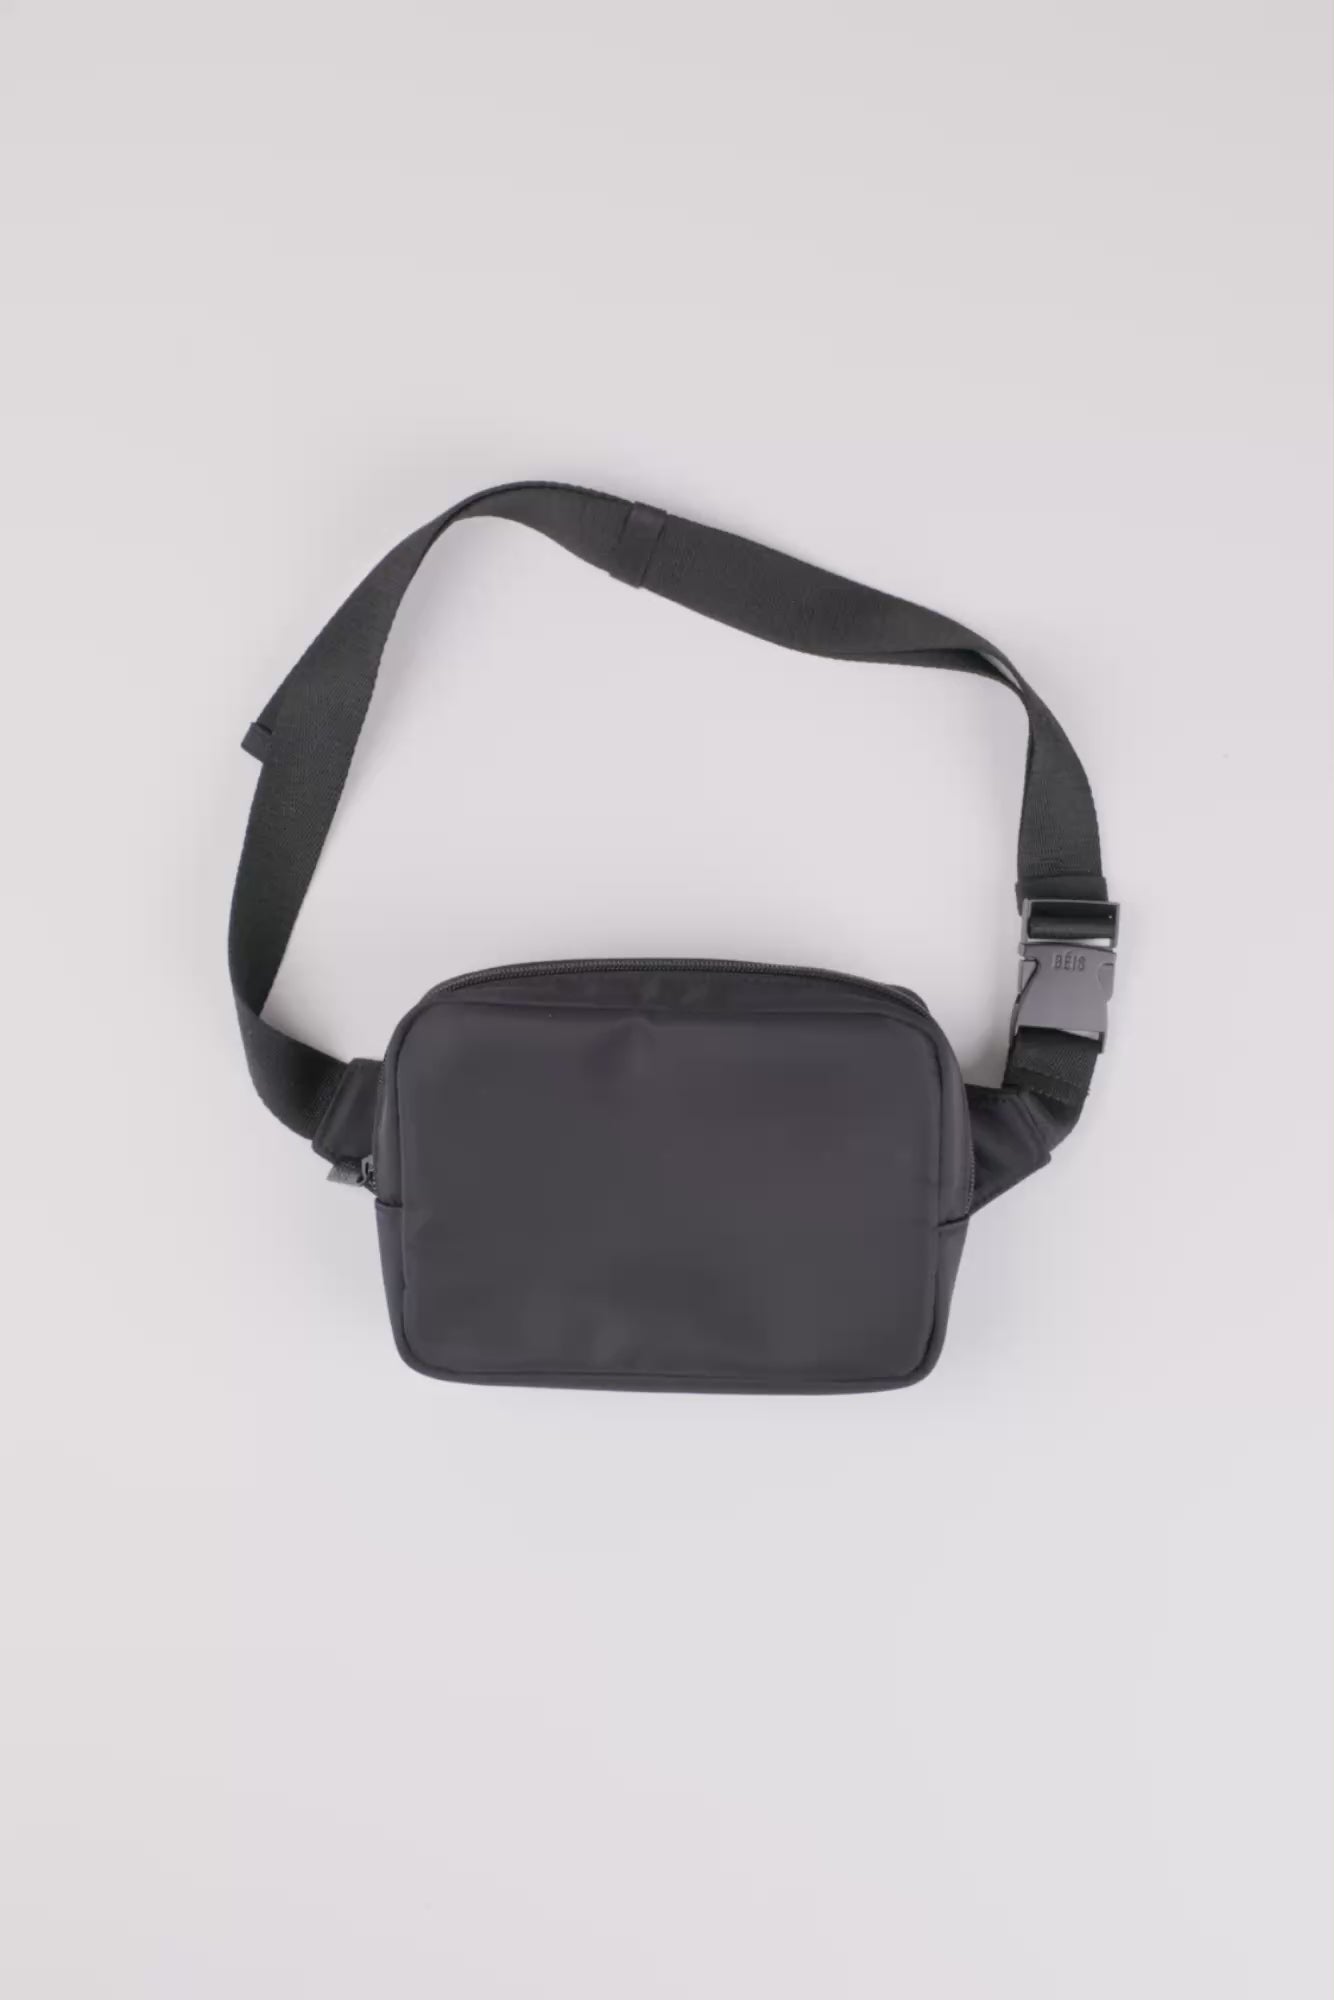 BÉIS 'The Belt Bag' In Black - Black Everyday Belt Bag